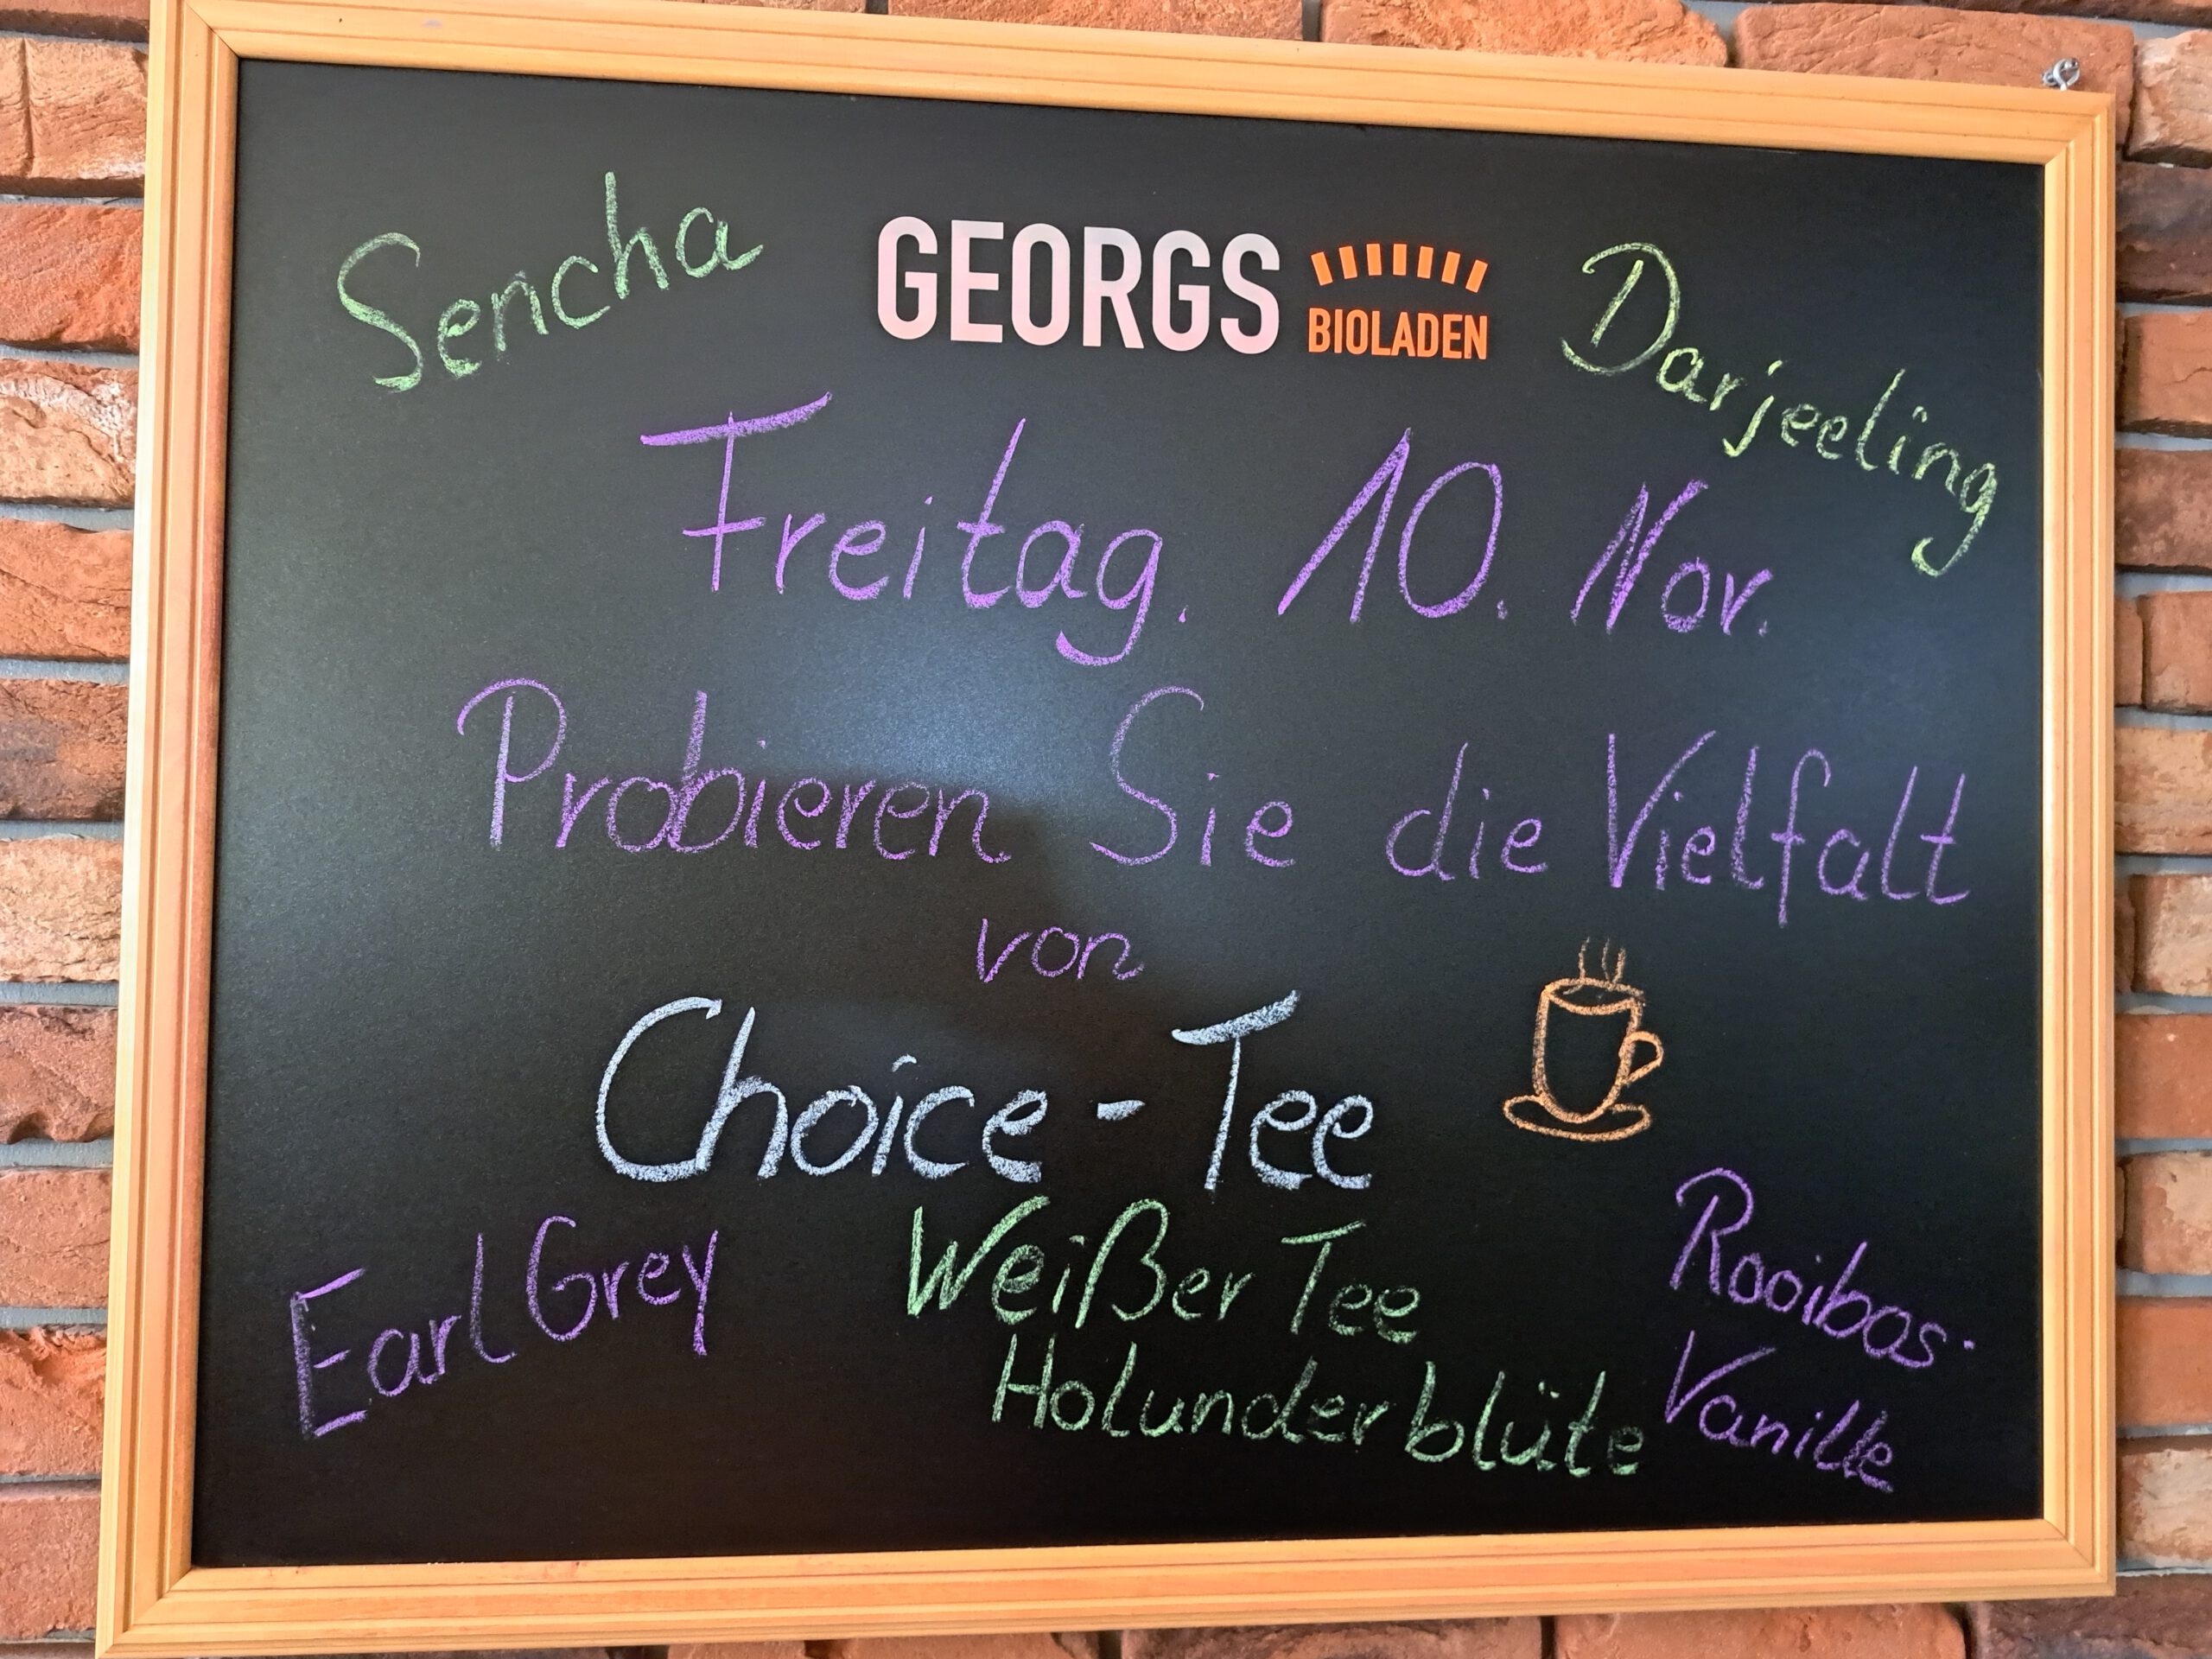 40 Jahre Georgs Bioladen! It’s Teatime!